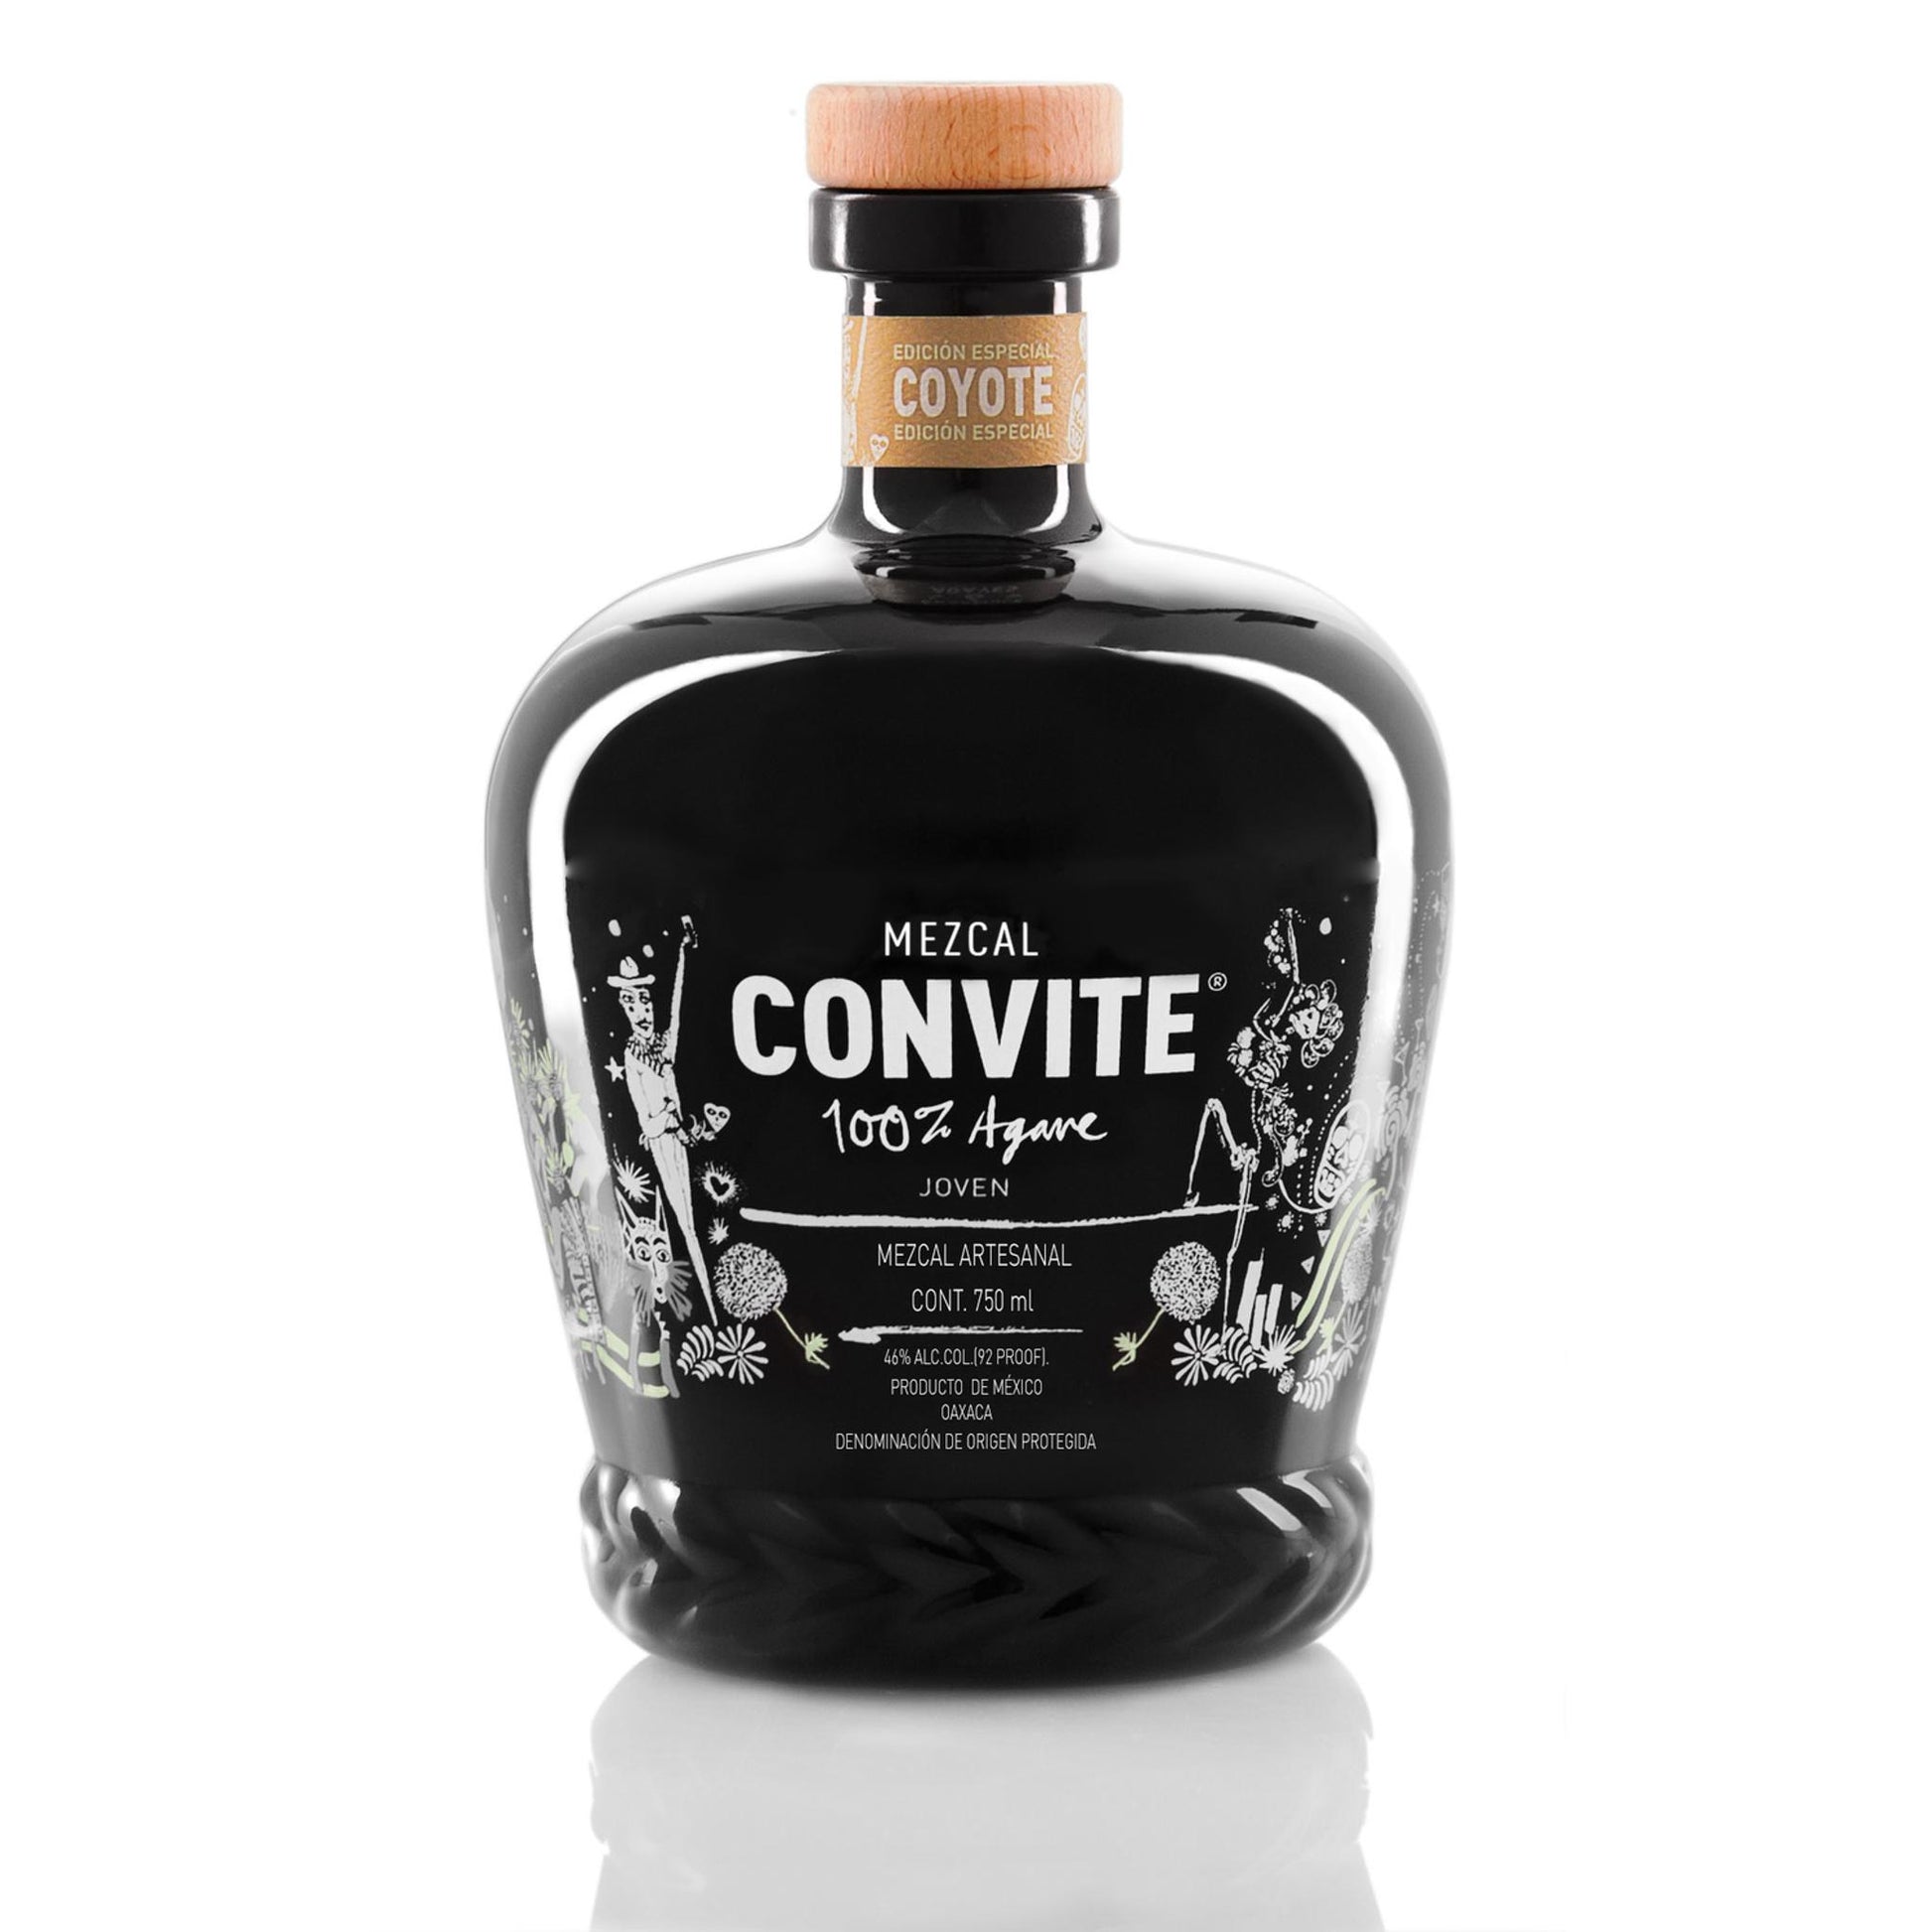 Convite Mezcal Artesanal Joven Coyote Edicion Especial - Liquor Geeks